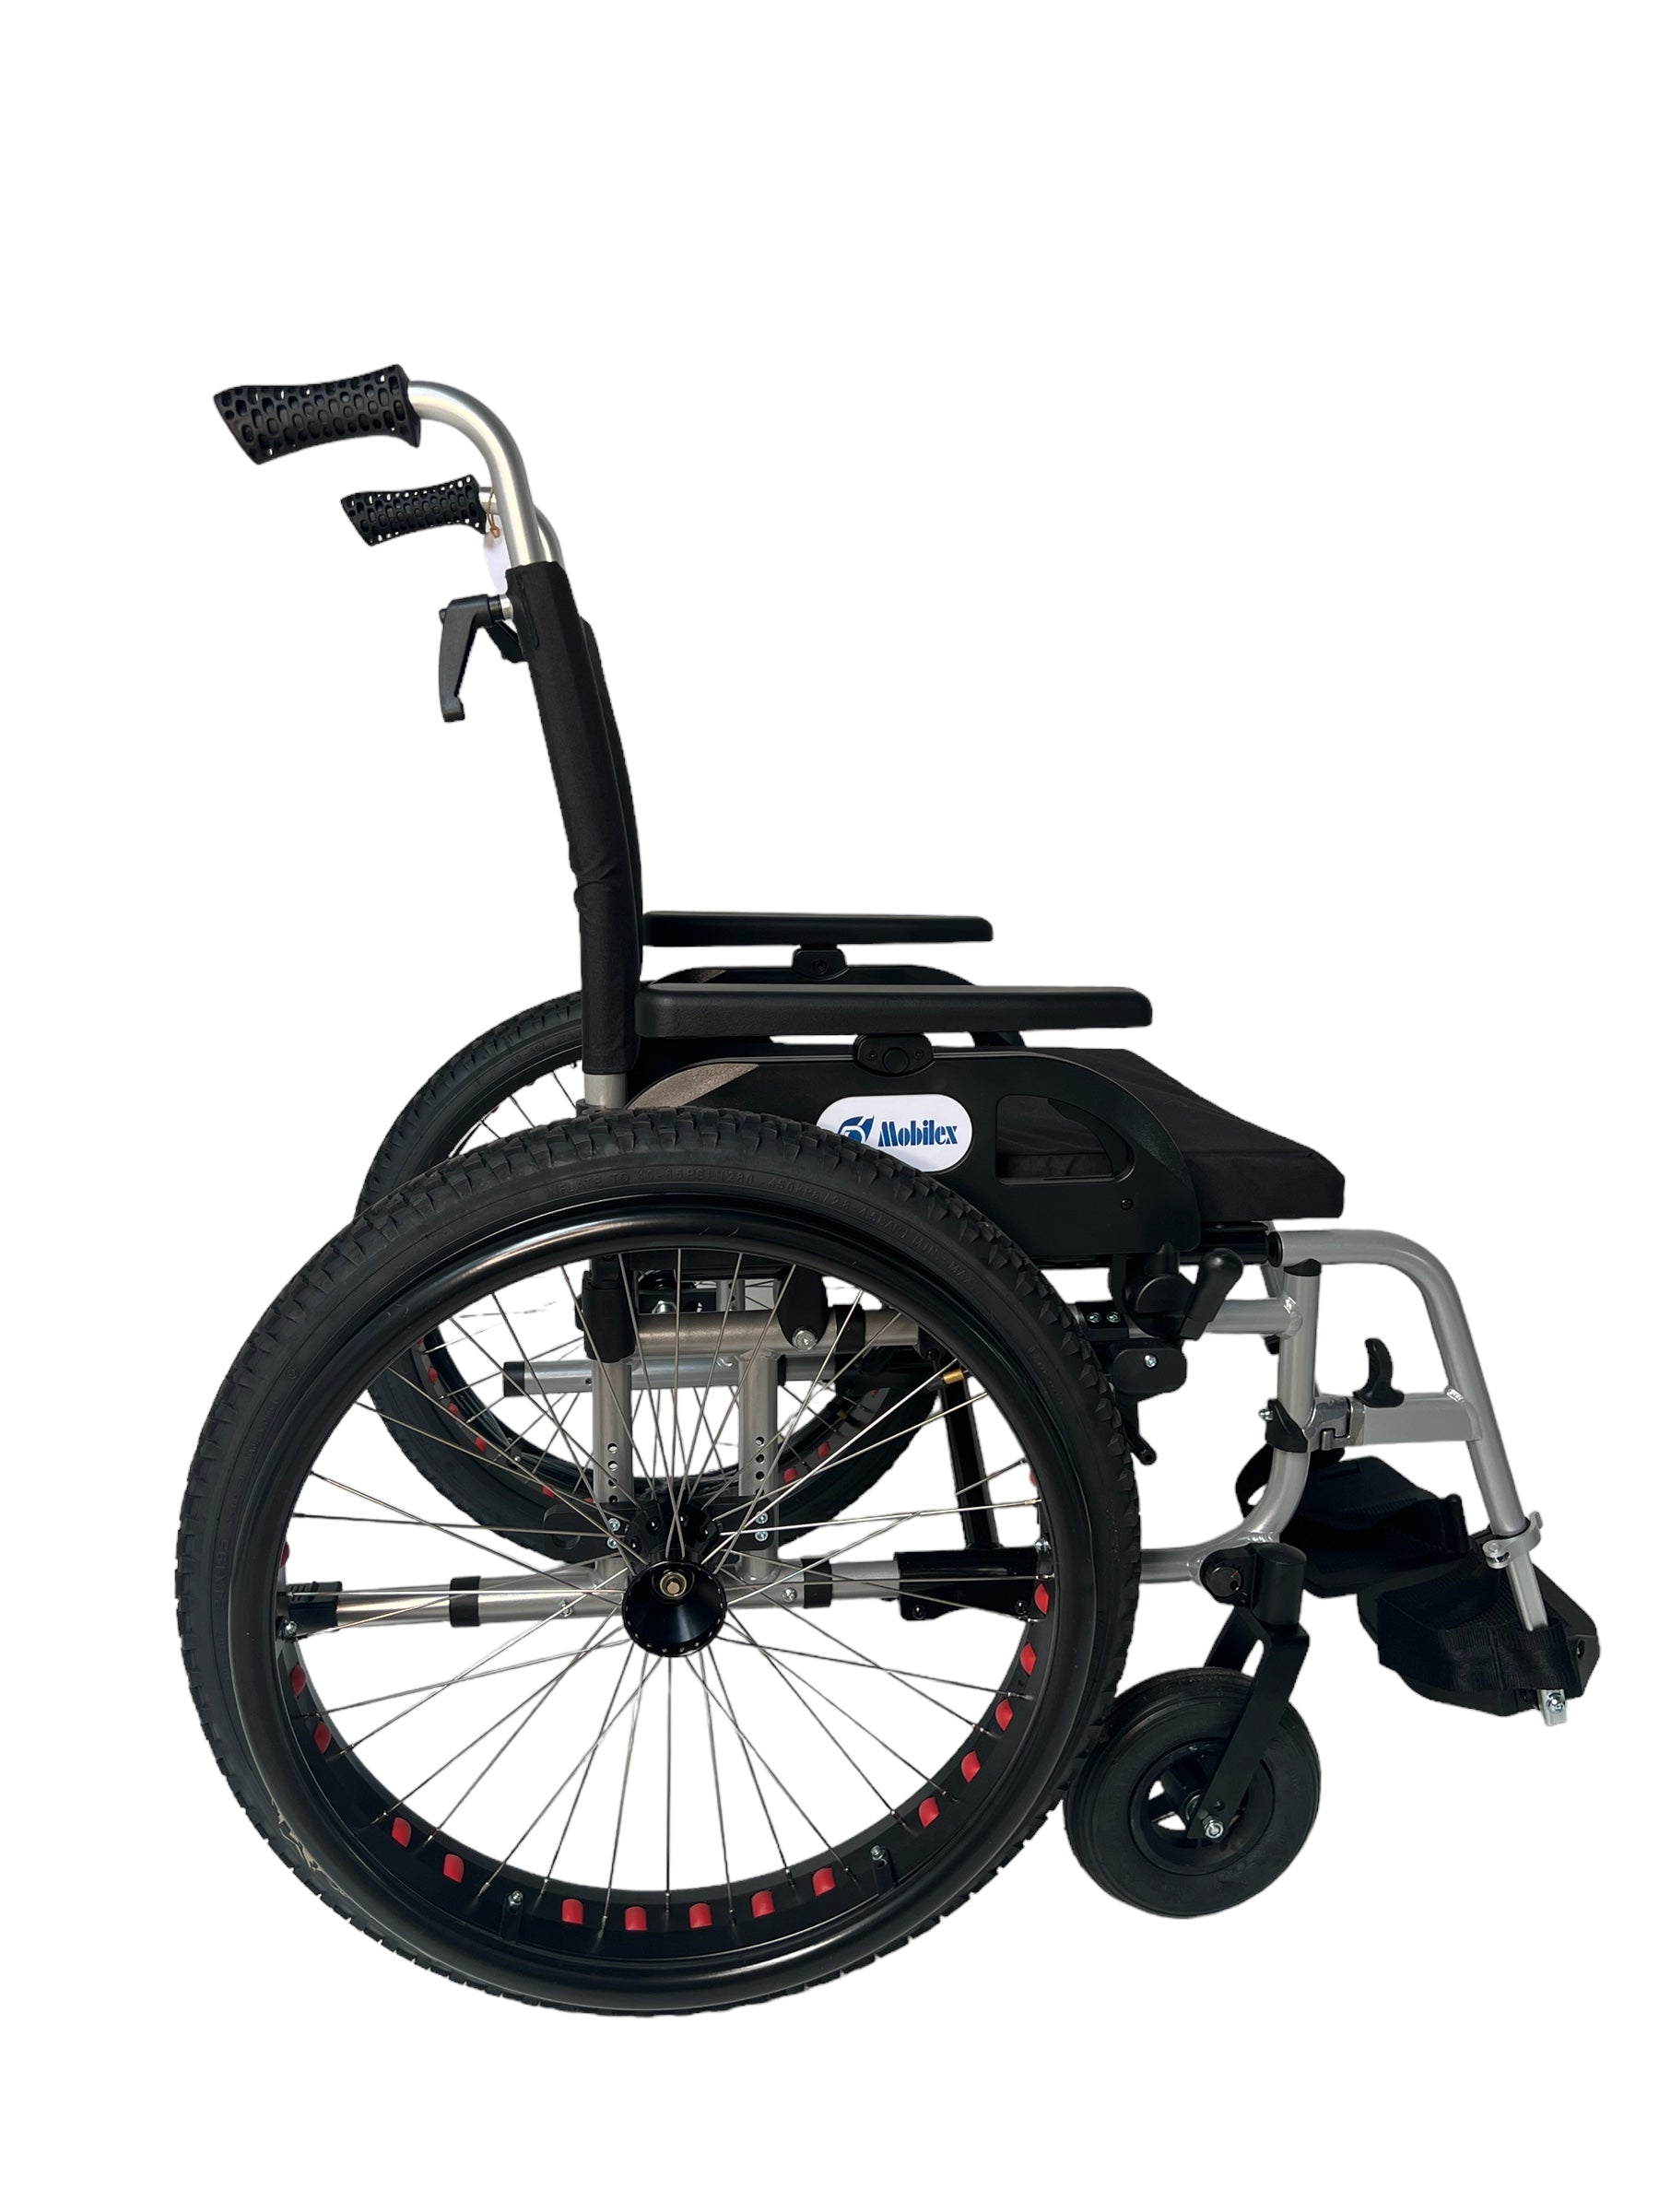 Billede af OFF-ROAD kørestol. Super lækker kørestol med terrængående dæk. 4 størrelser., 48 cm